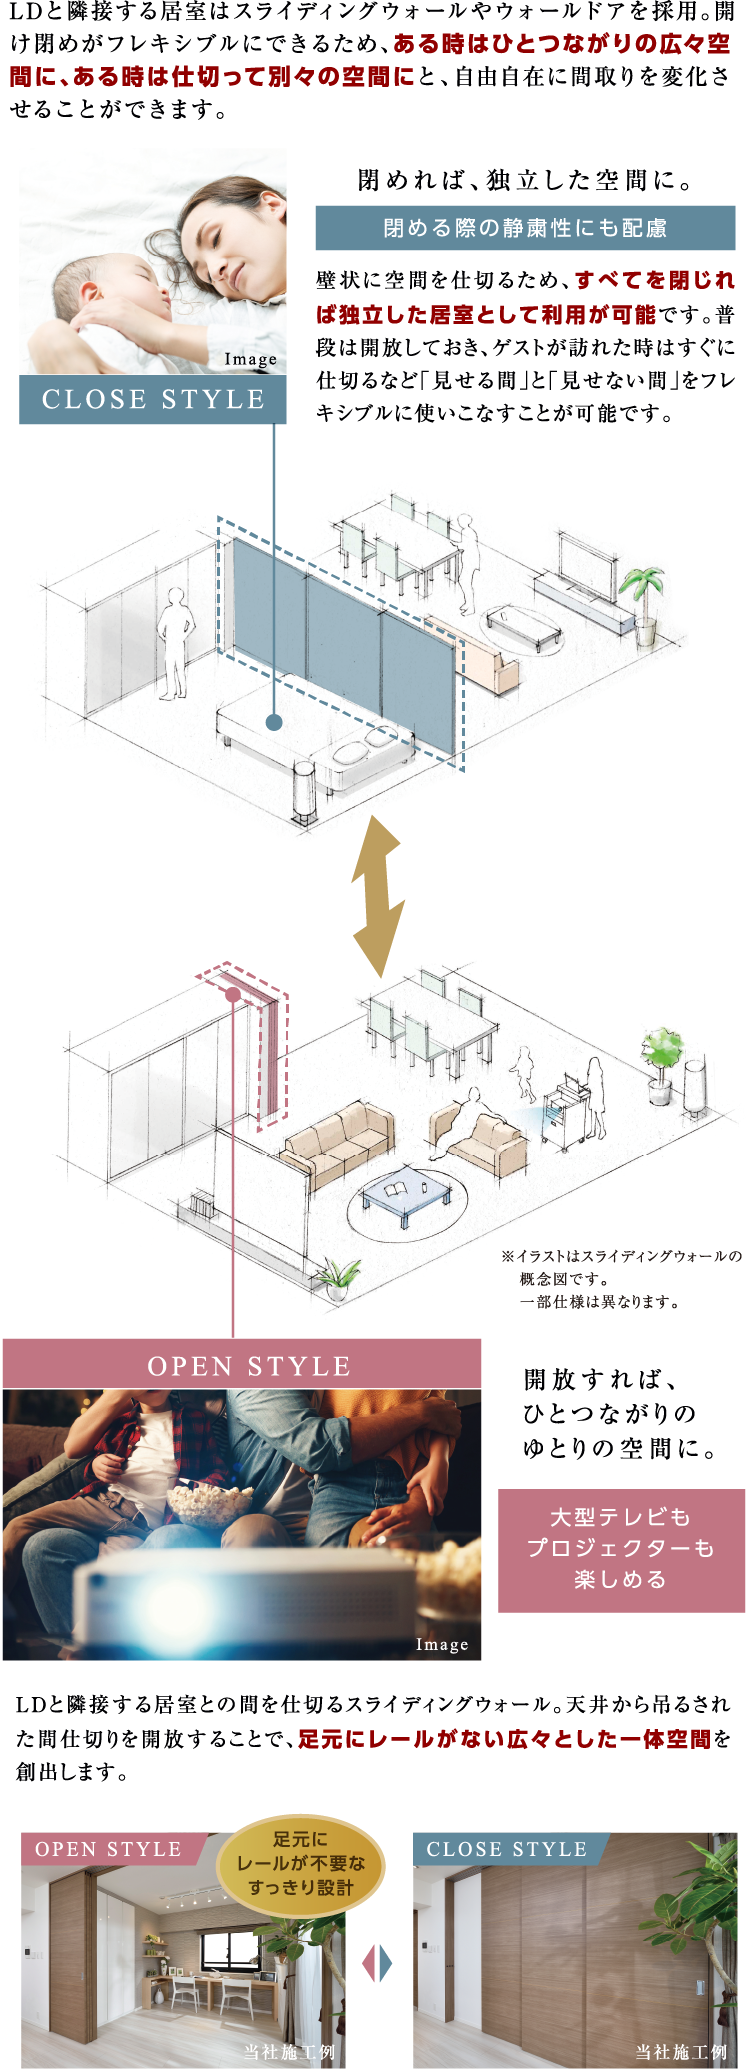 LDと隣接する居室はスライディングウォールやウォールドアを採用。開け閉めがフレキシブルにできるため、ある時はひとつながりの広々空間に、ある時は仕切って別々の空間にと、自由自在に間取りを変化させることができます。